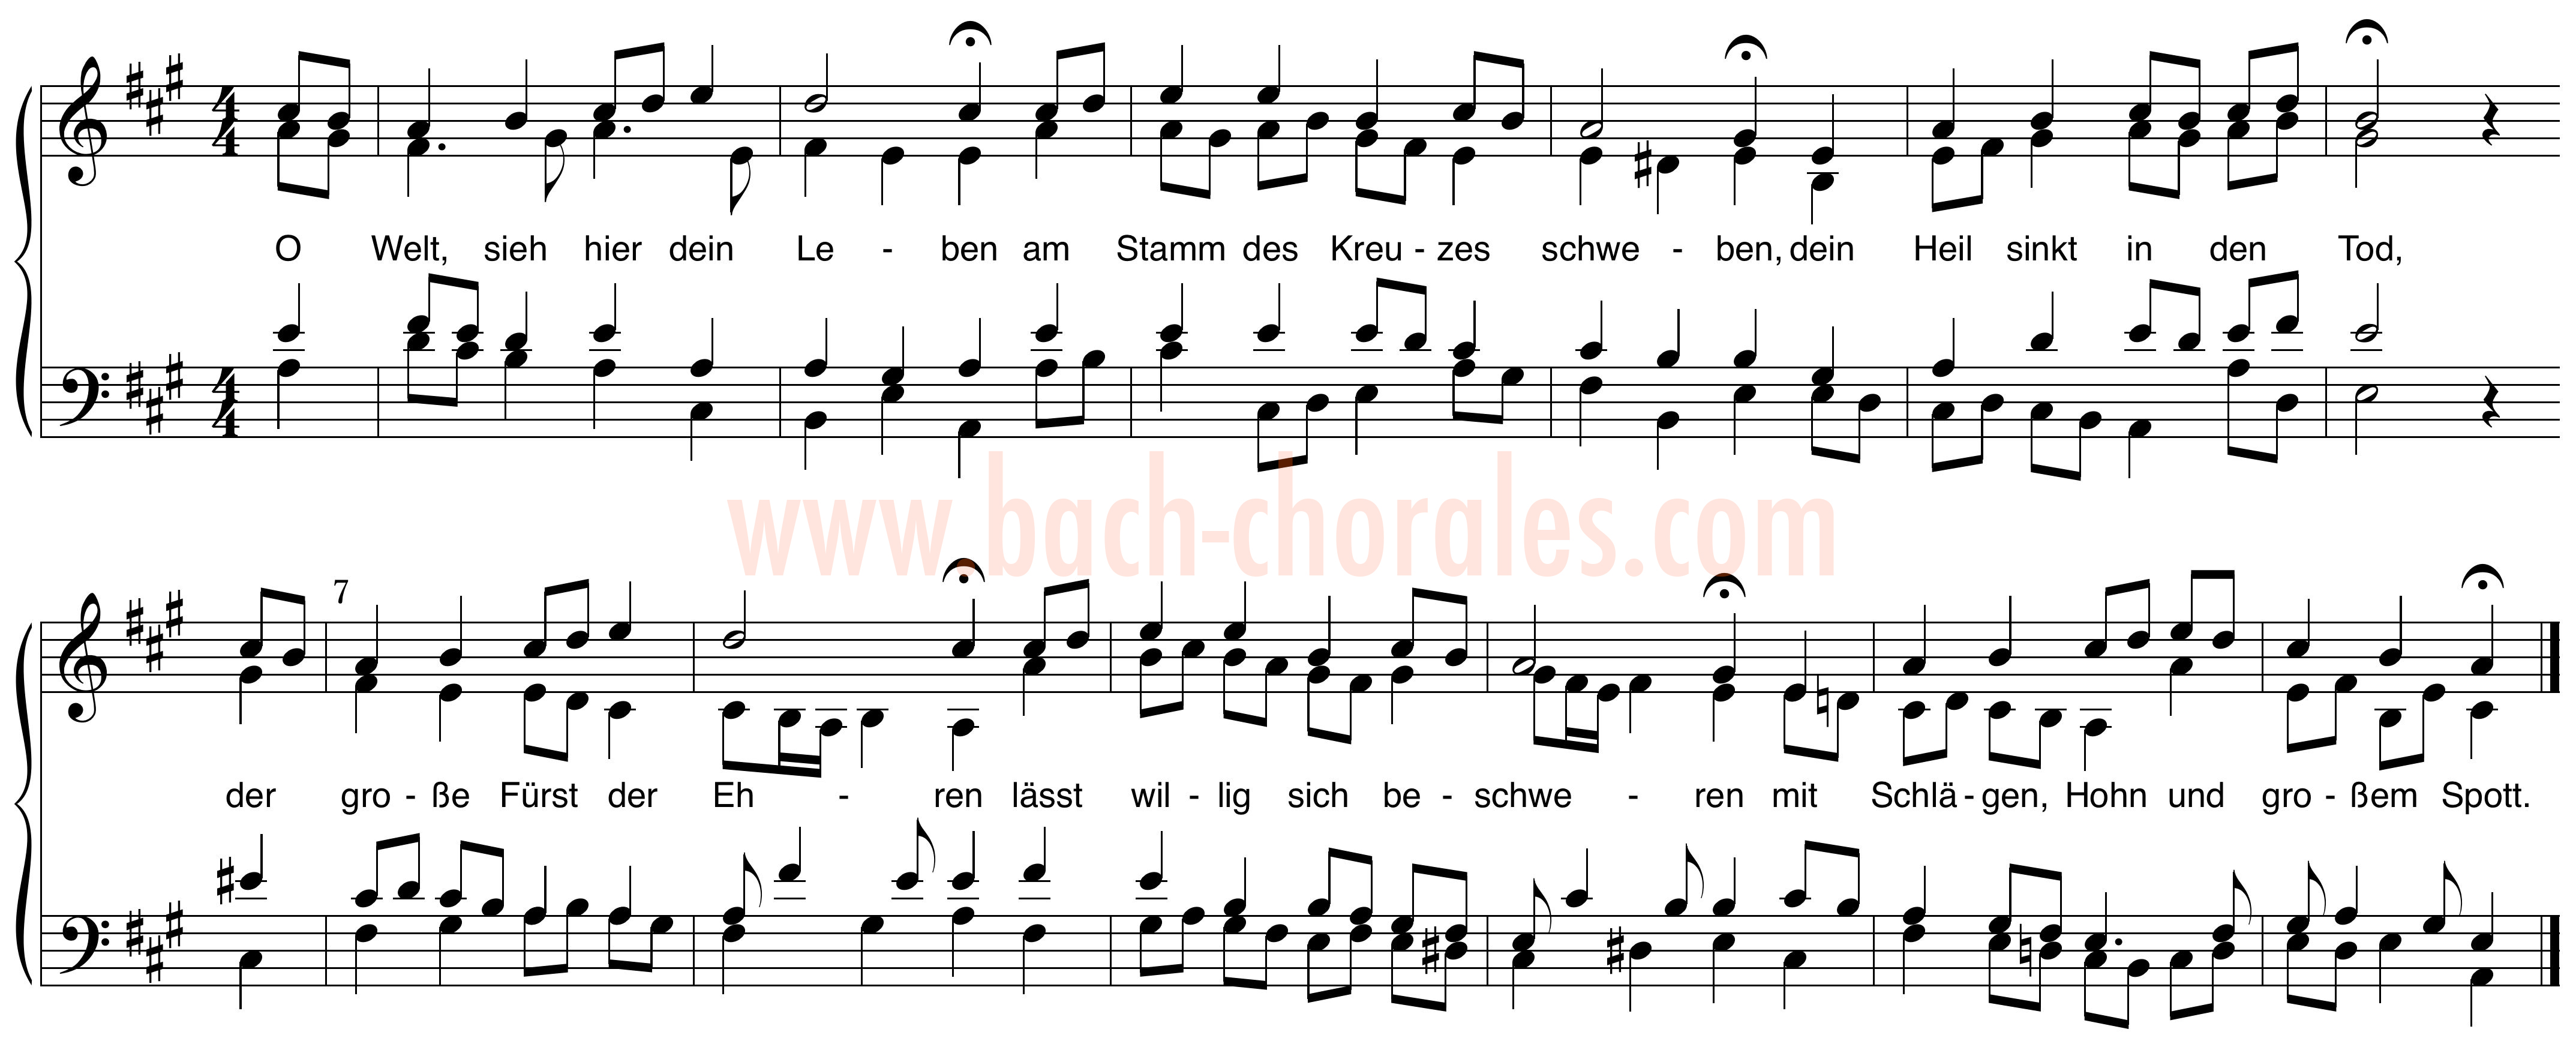 notenbeeld BWV 394 op https://www.bach-chorales.com/